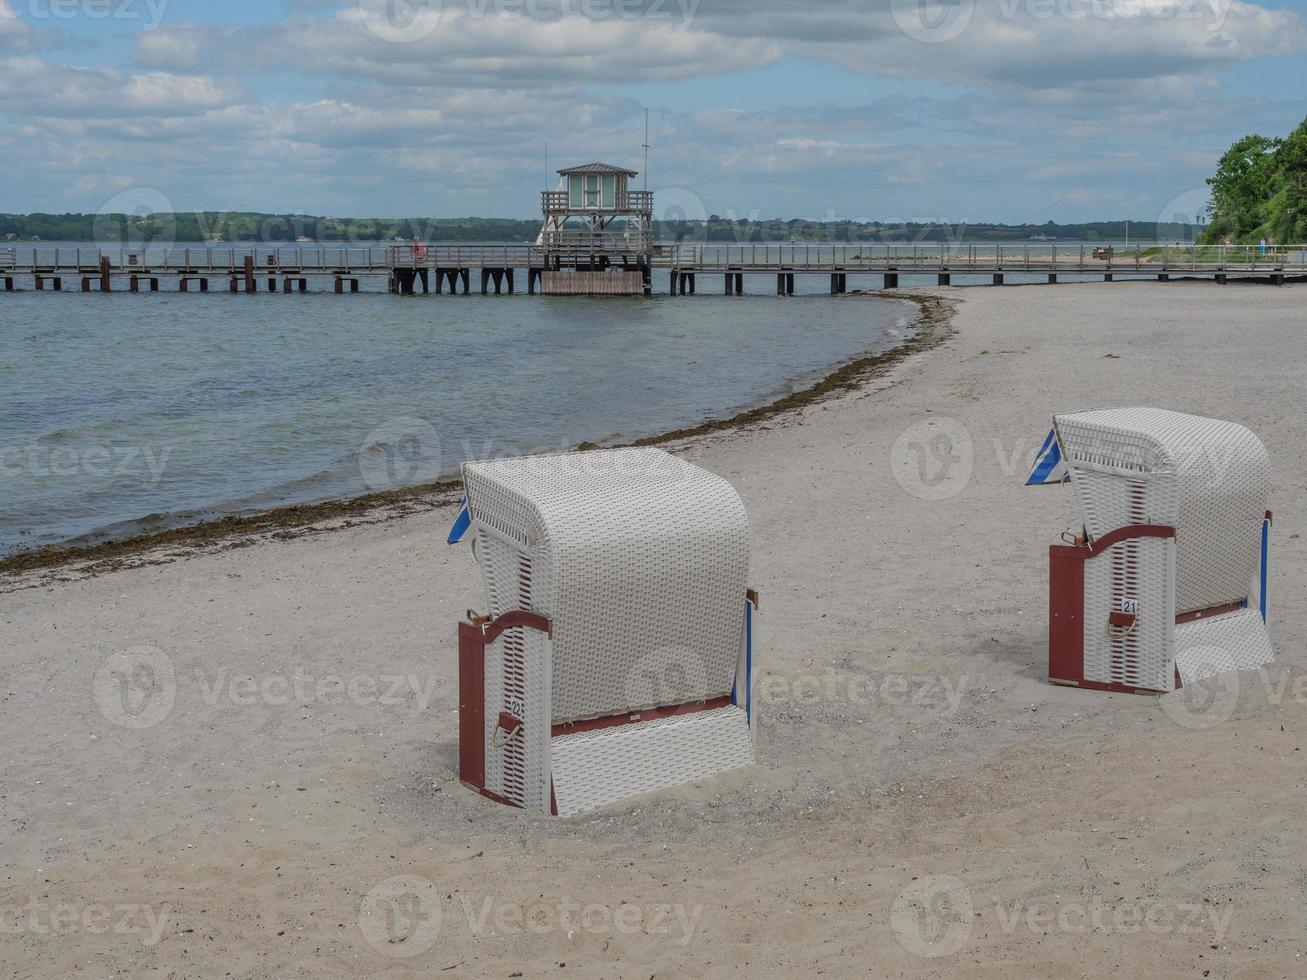 la spiaggia di Sandwig al mar baltico foto